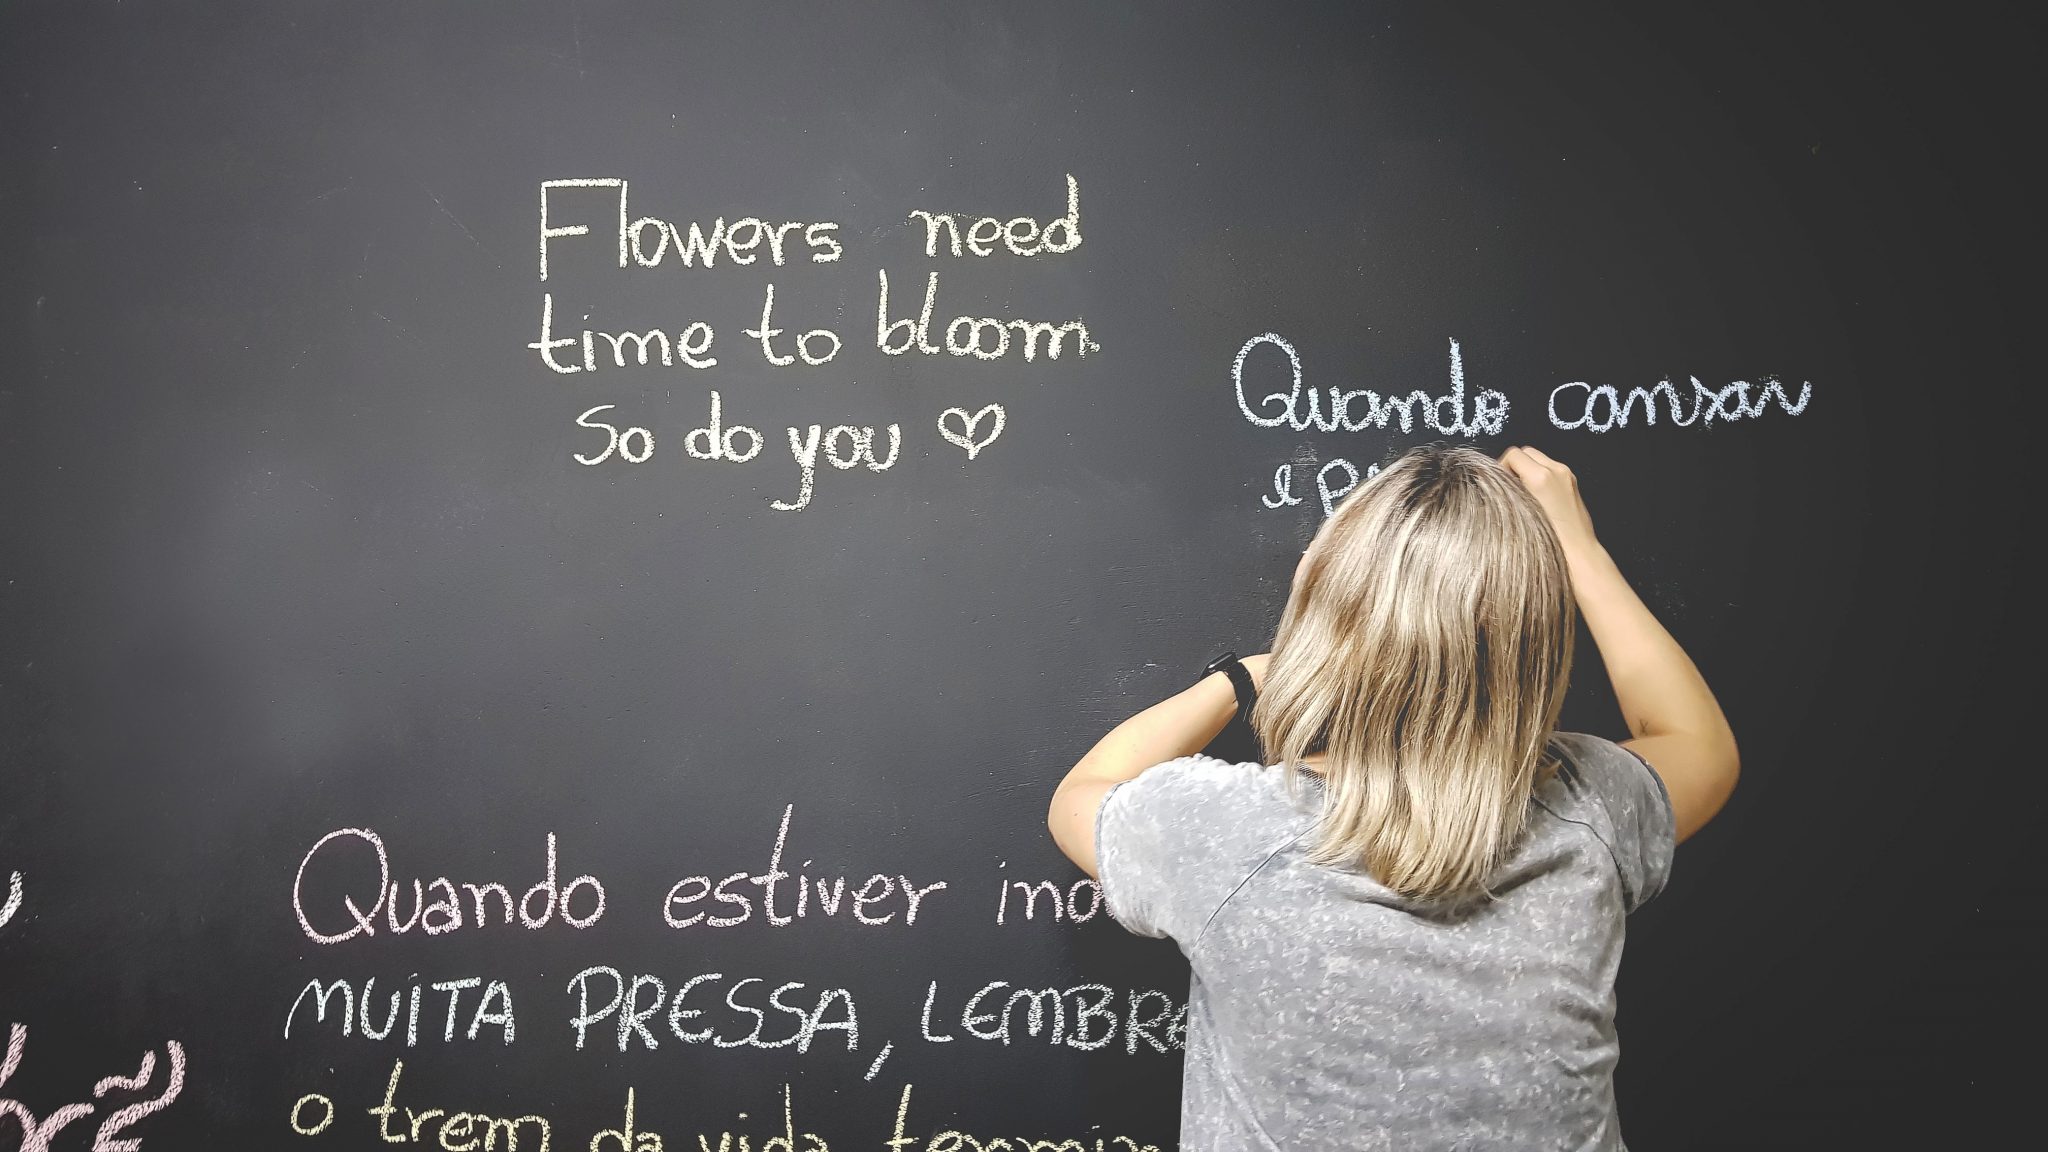 woman writing on chalkboard in spanish